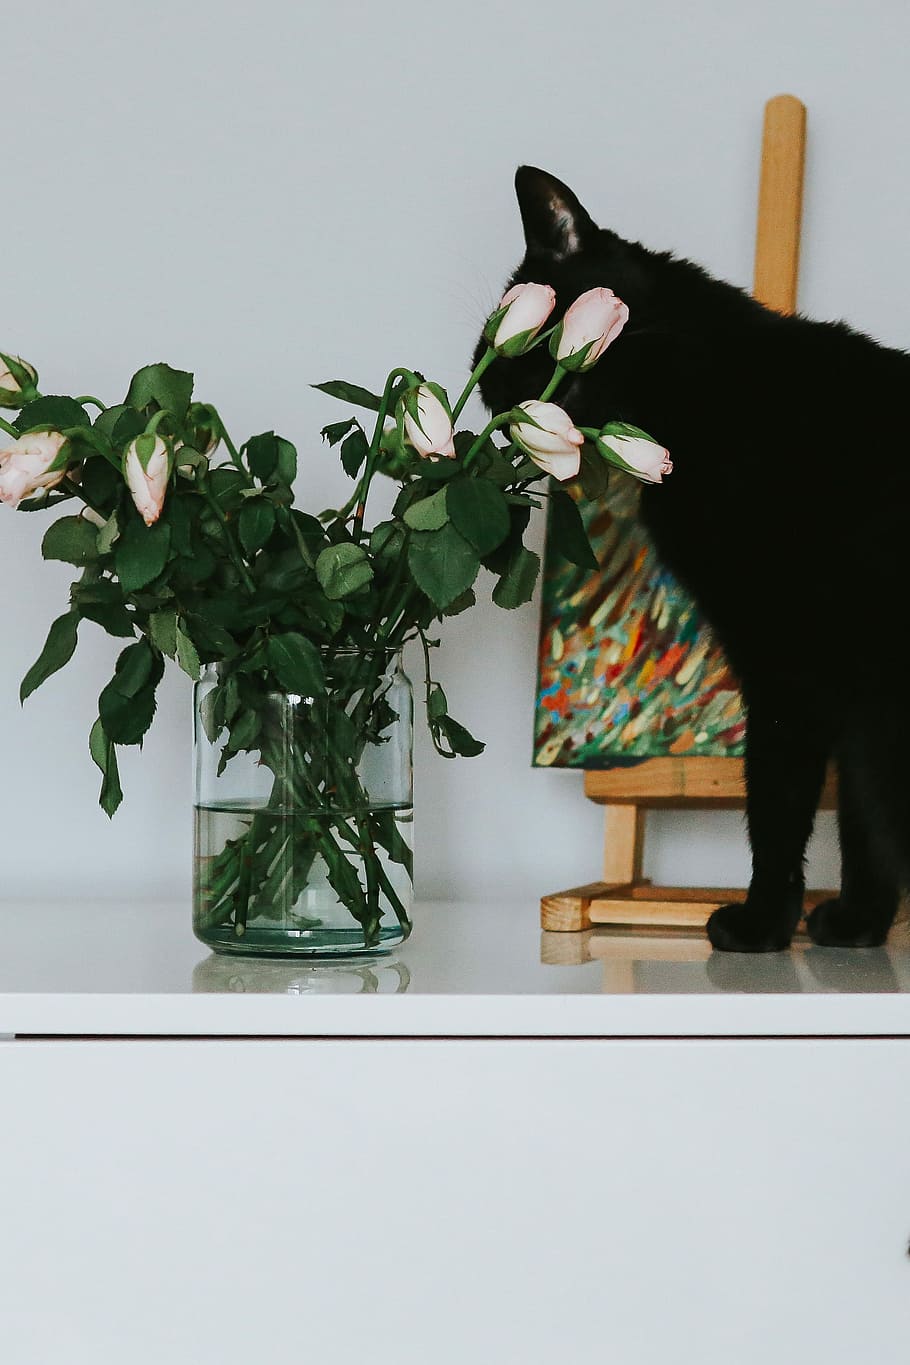 hitam, kucing, bunga, lukisan, Kucing hitam, mawar, hewan peliharaan, hewan, seni, warna merah muda